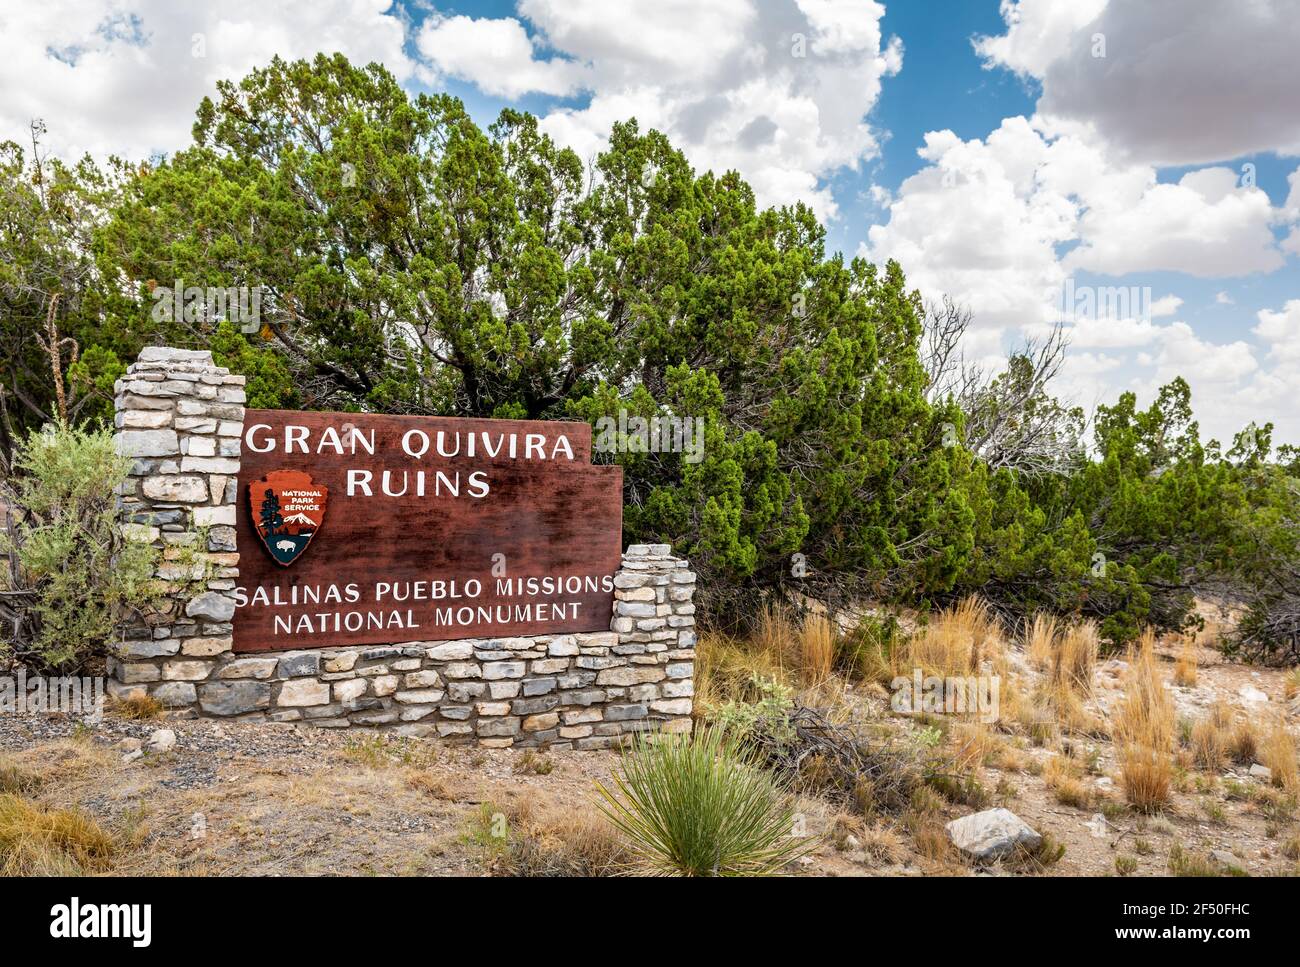 Panneau des ruines de Gran Quivira au monument national des missions de Salinas, Nouveau-Mexique, États-Unis. Banque D'Images